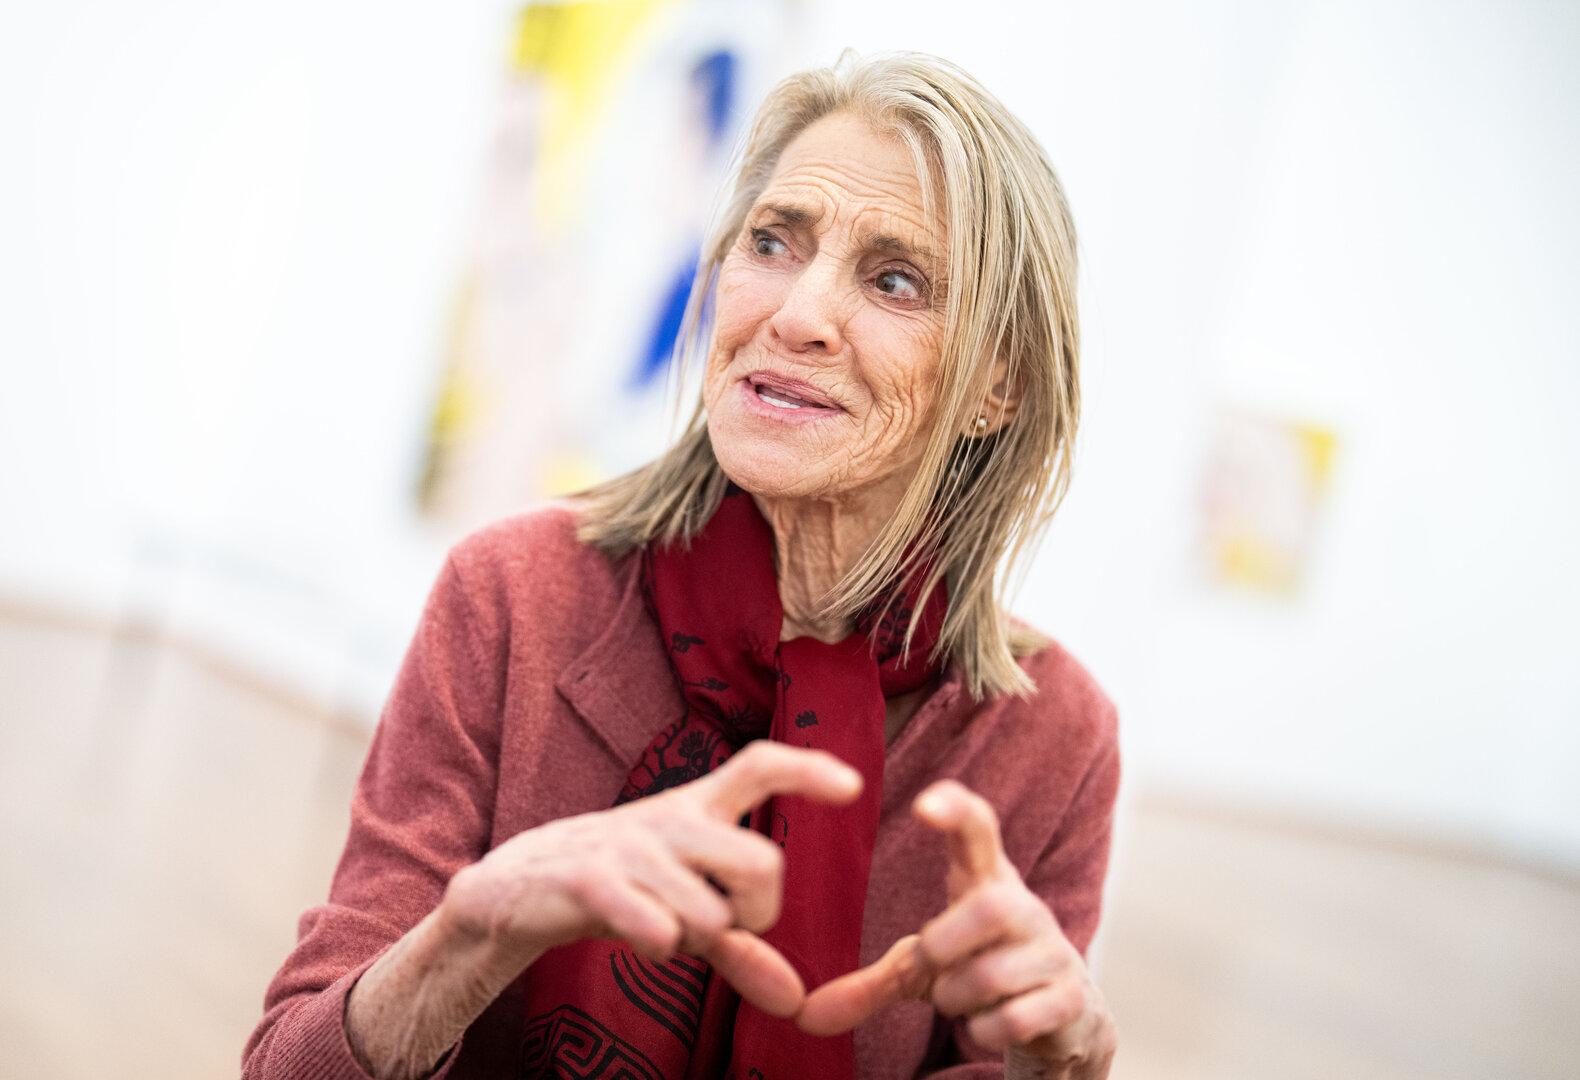 Dorothy Lichtenstein tot: Setzte sich für Pop-Art-Erbe ein